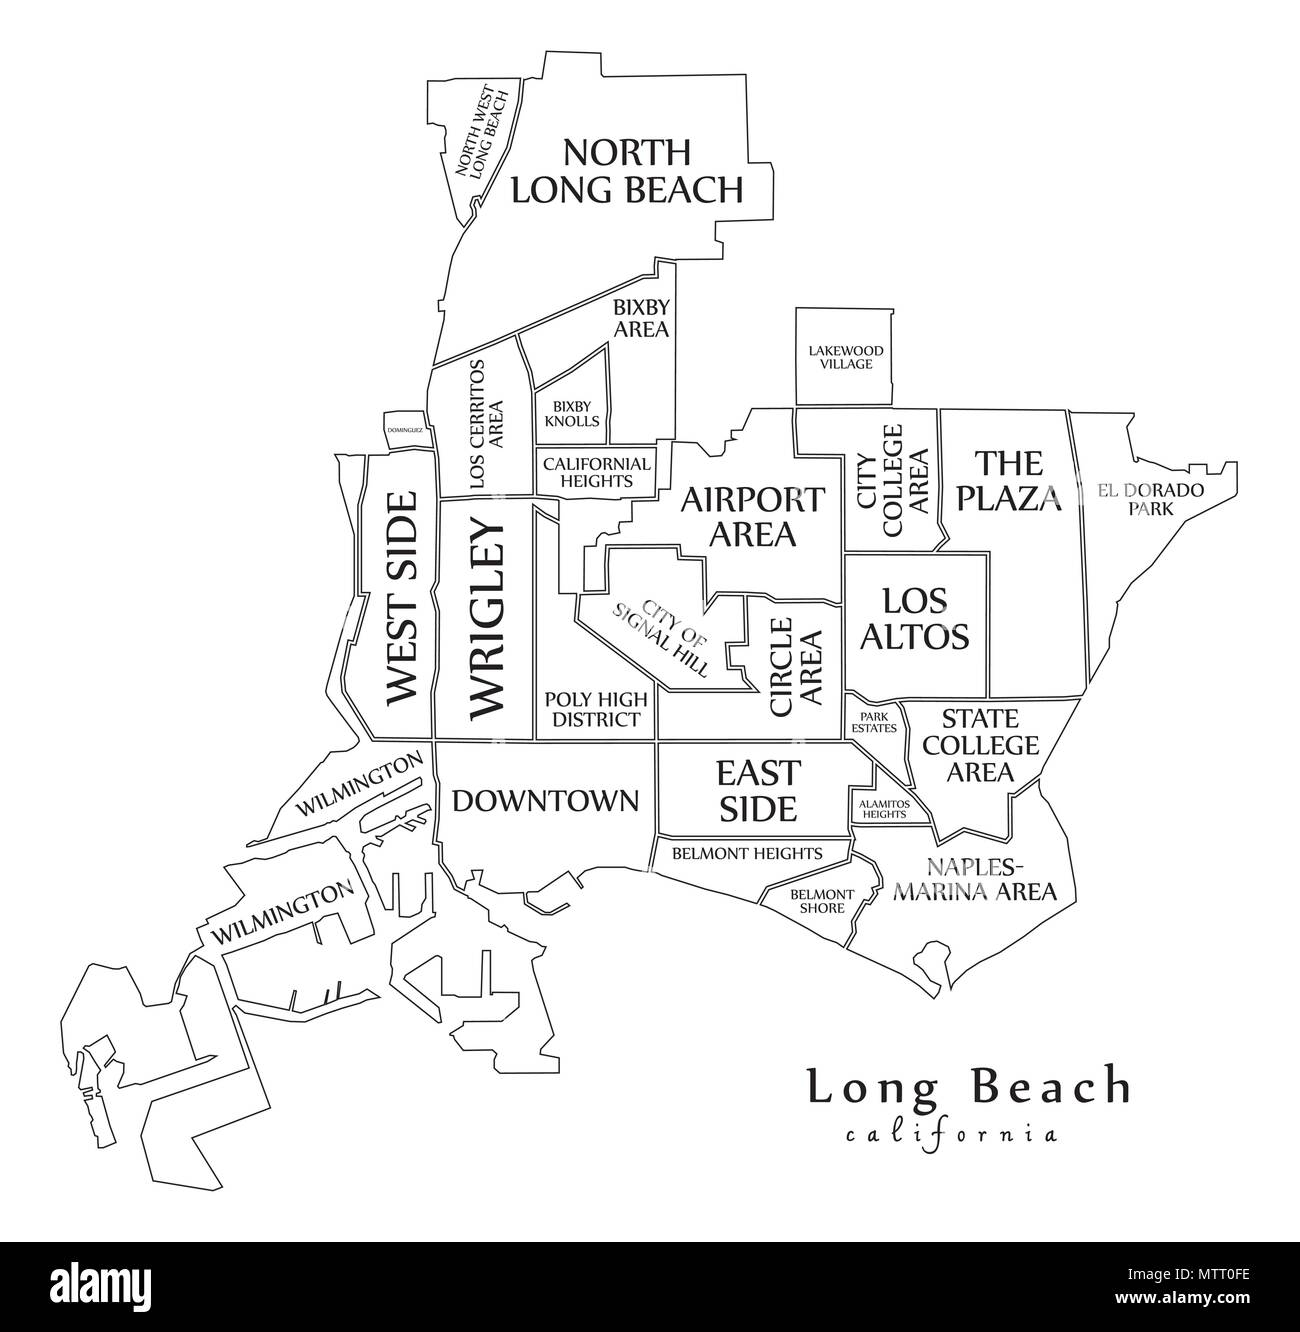 map of long beach california Modern City Map Long Beach California City Of The Usa With